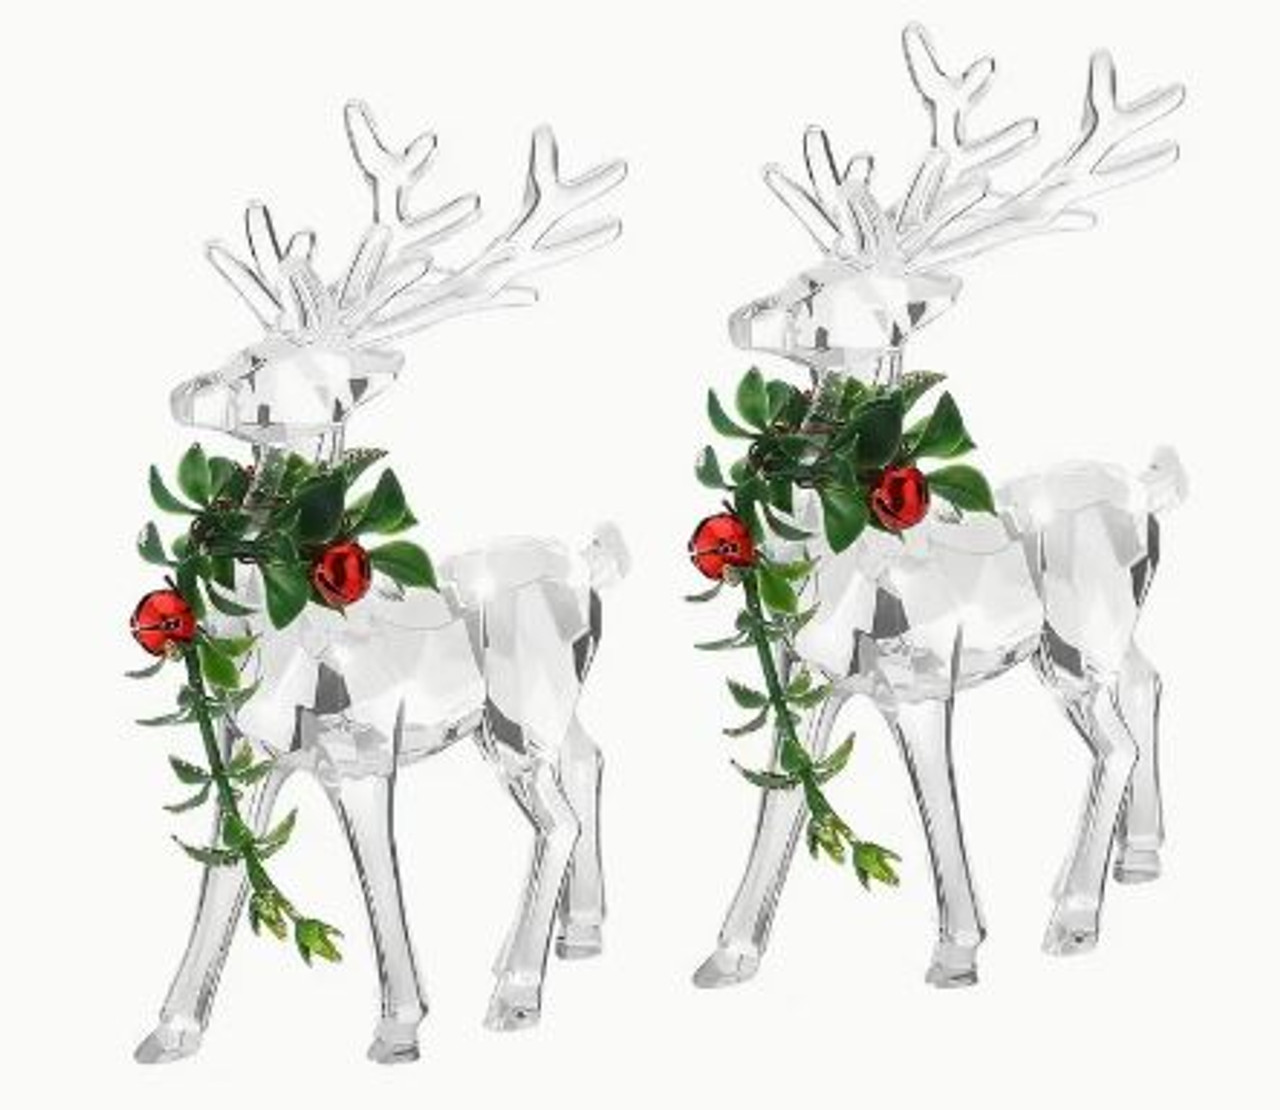 Acrylic Reindeer Figurine